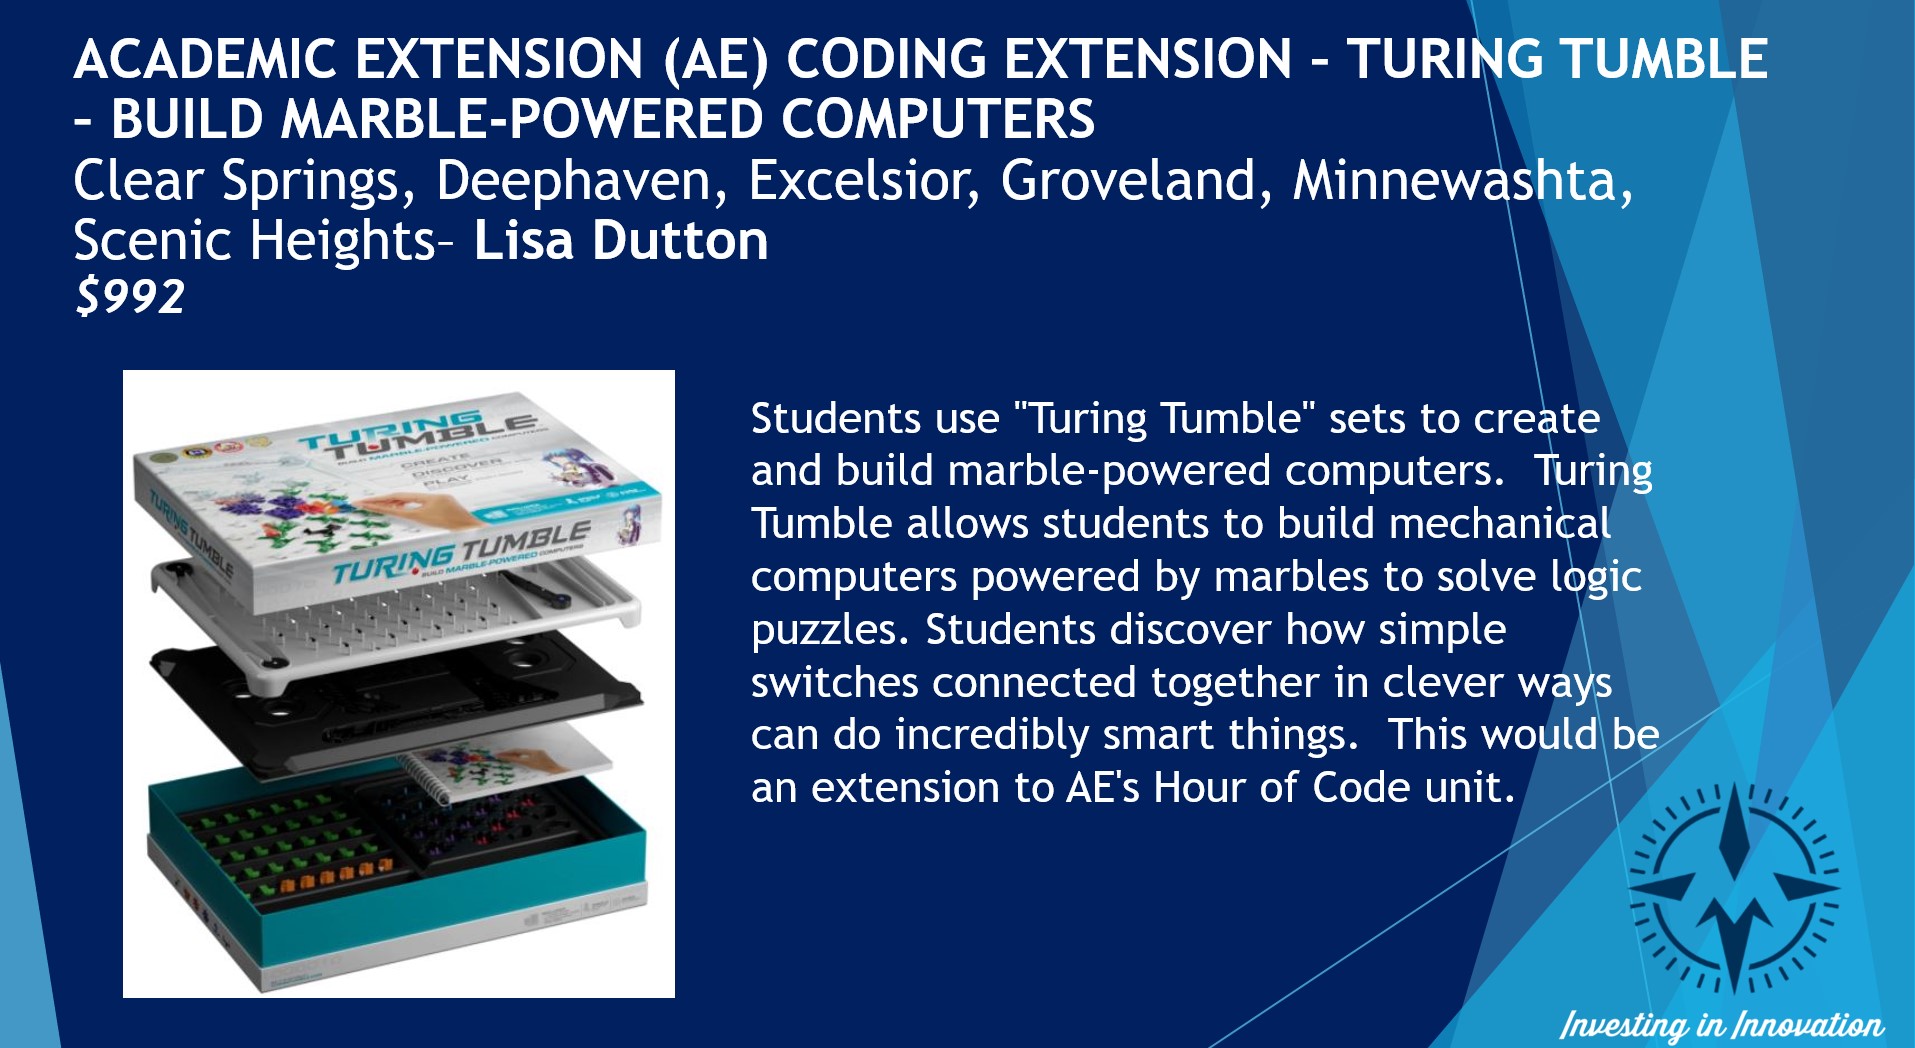 AE Расширение кодирования Тьюринг Тумбл